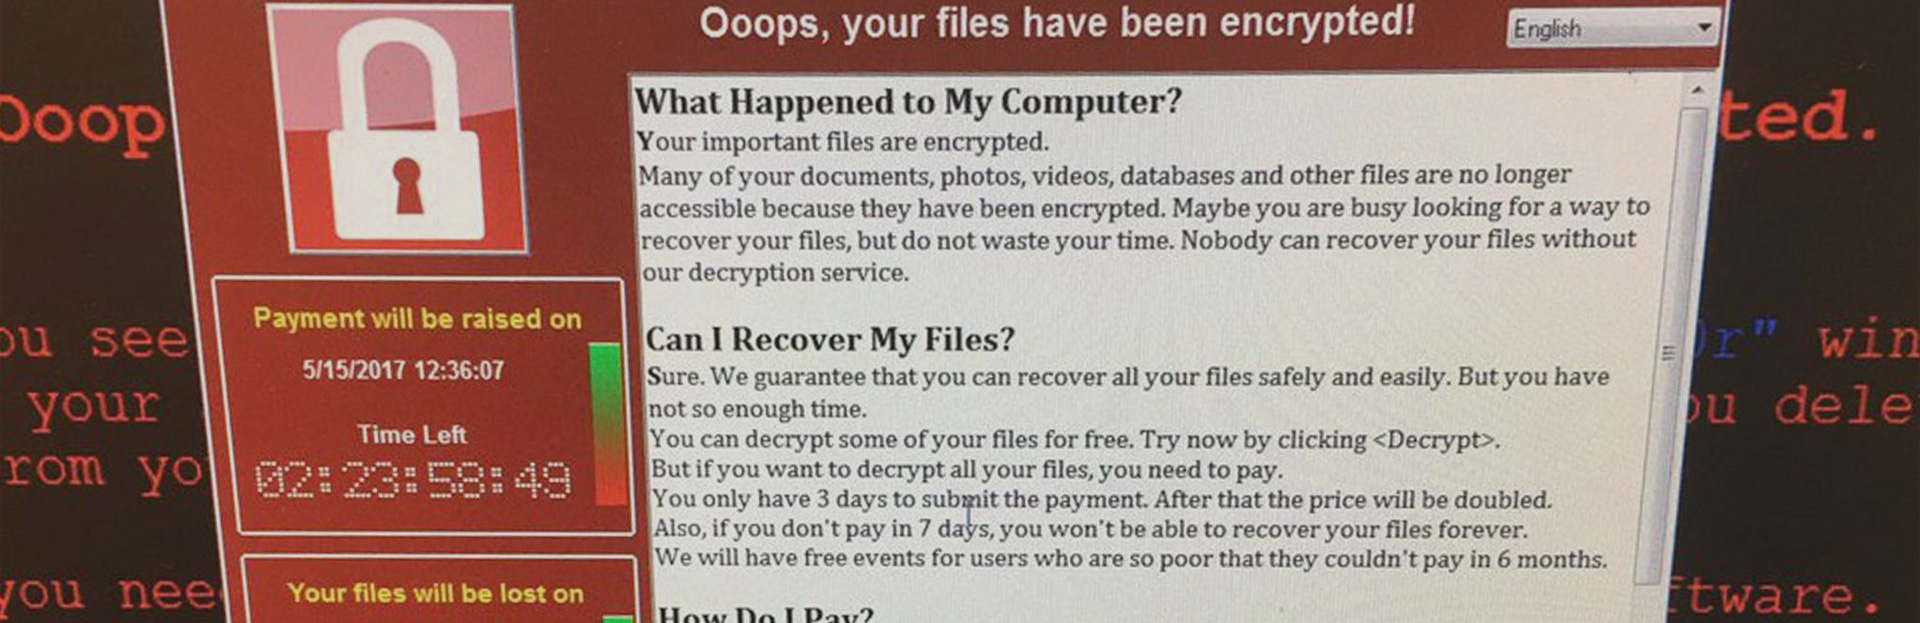 Mensaje de secuestro del ransomware WannaCry